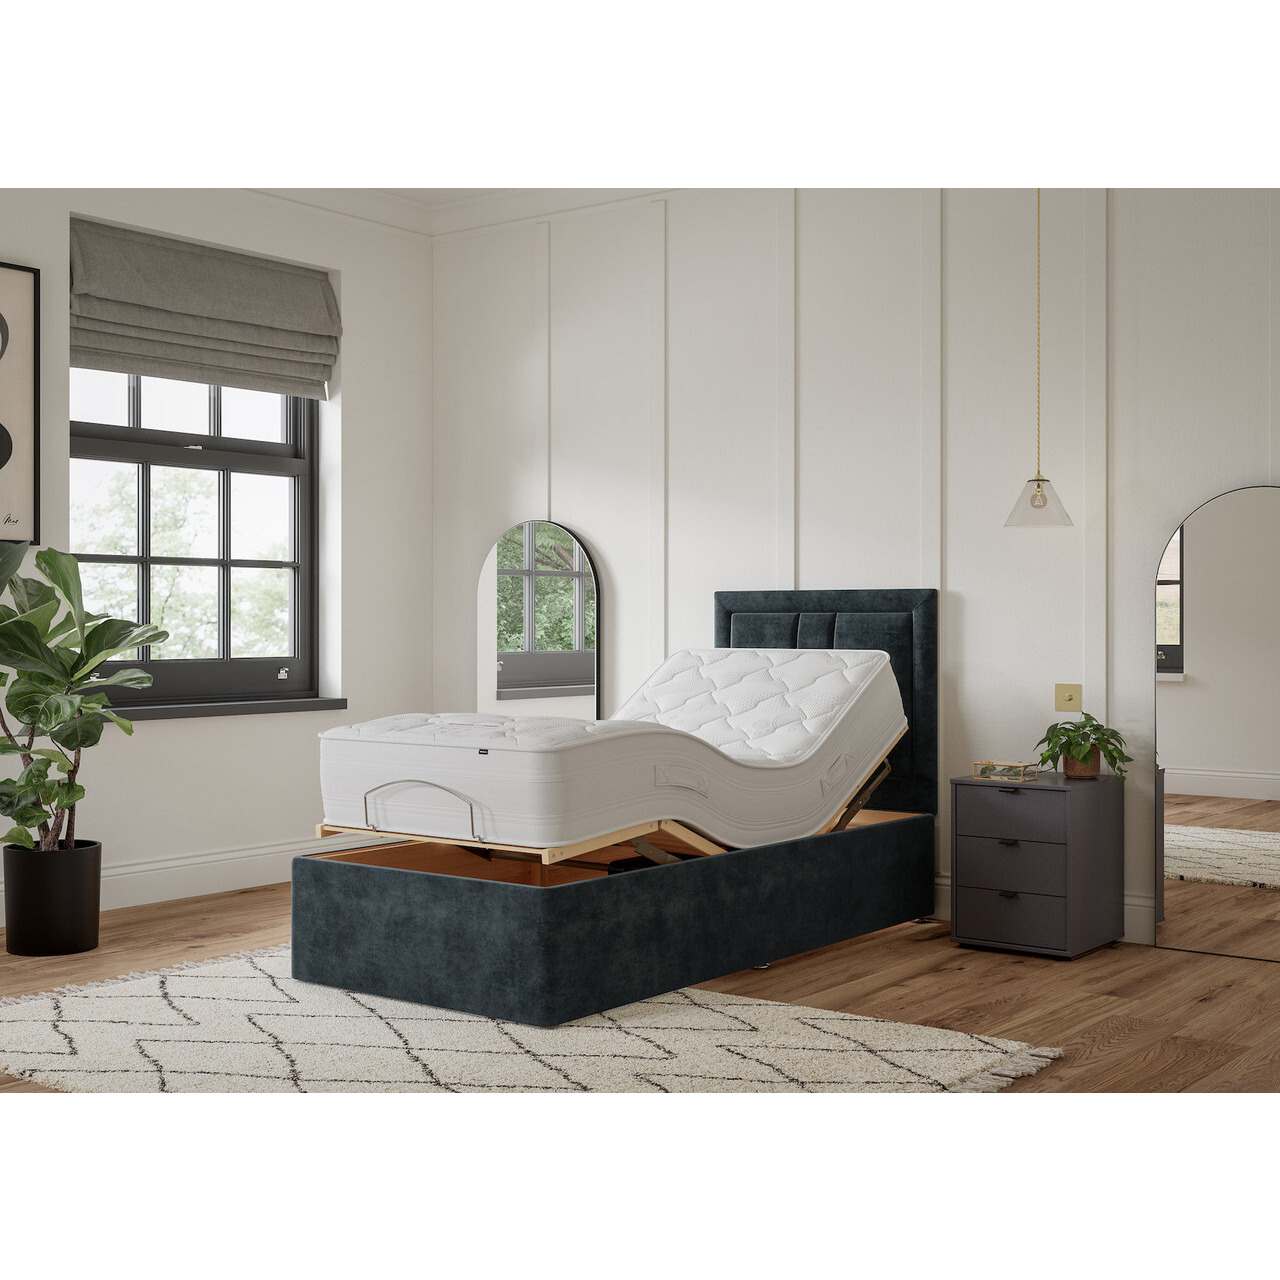 Postureflex 1000 Pocket Memory Divan Bed Set - image 1